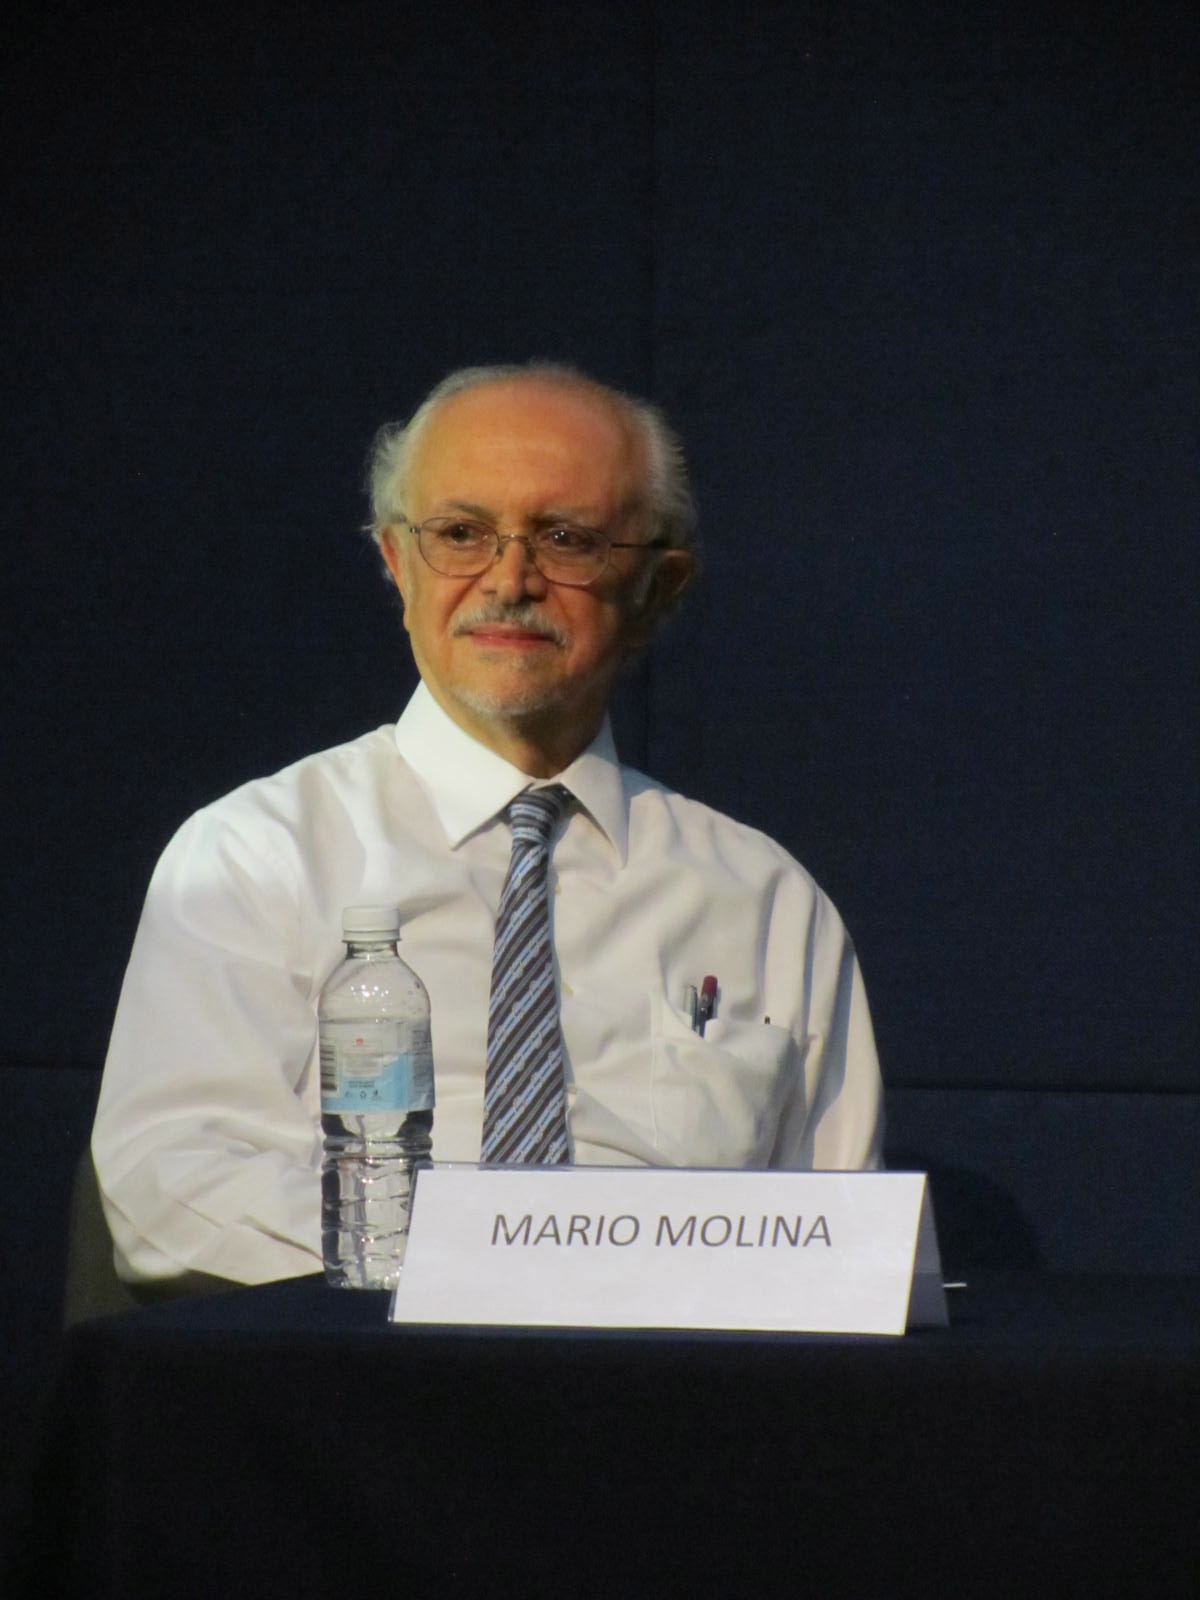 El doctor Mario Molina, Premio Nobel de Química y miembro de la Academia Mexicana de Ciencias.